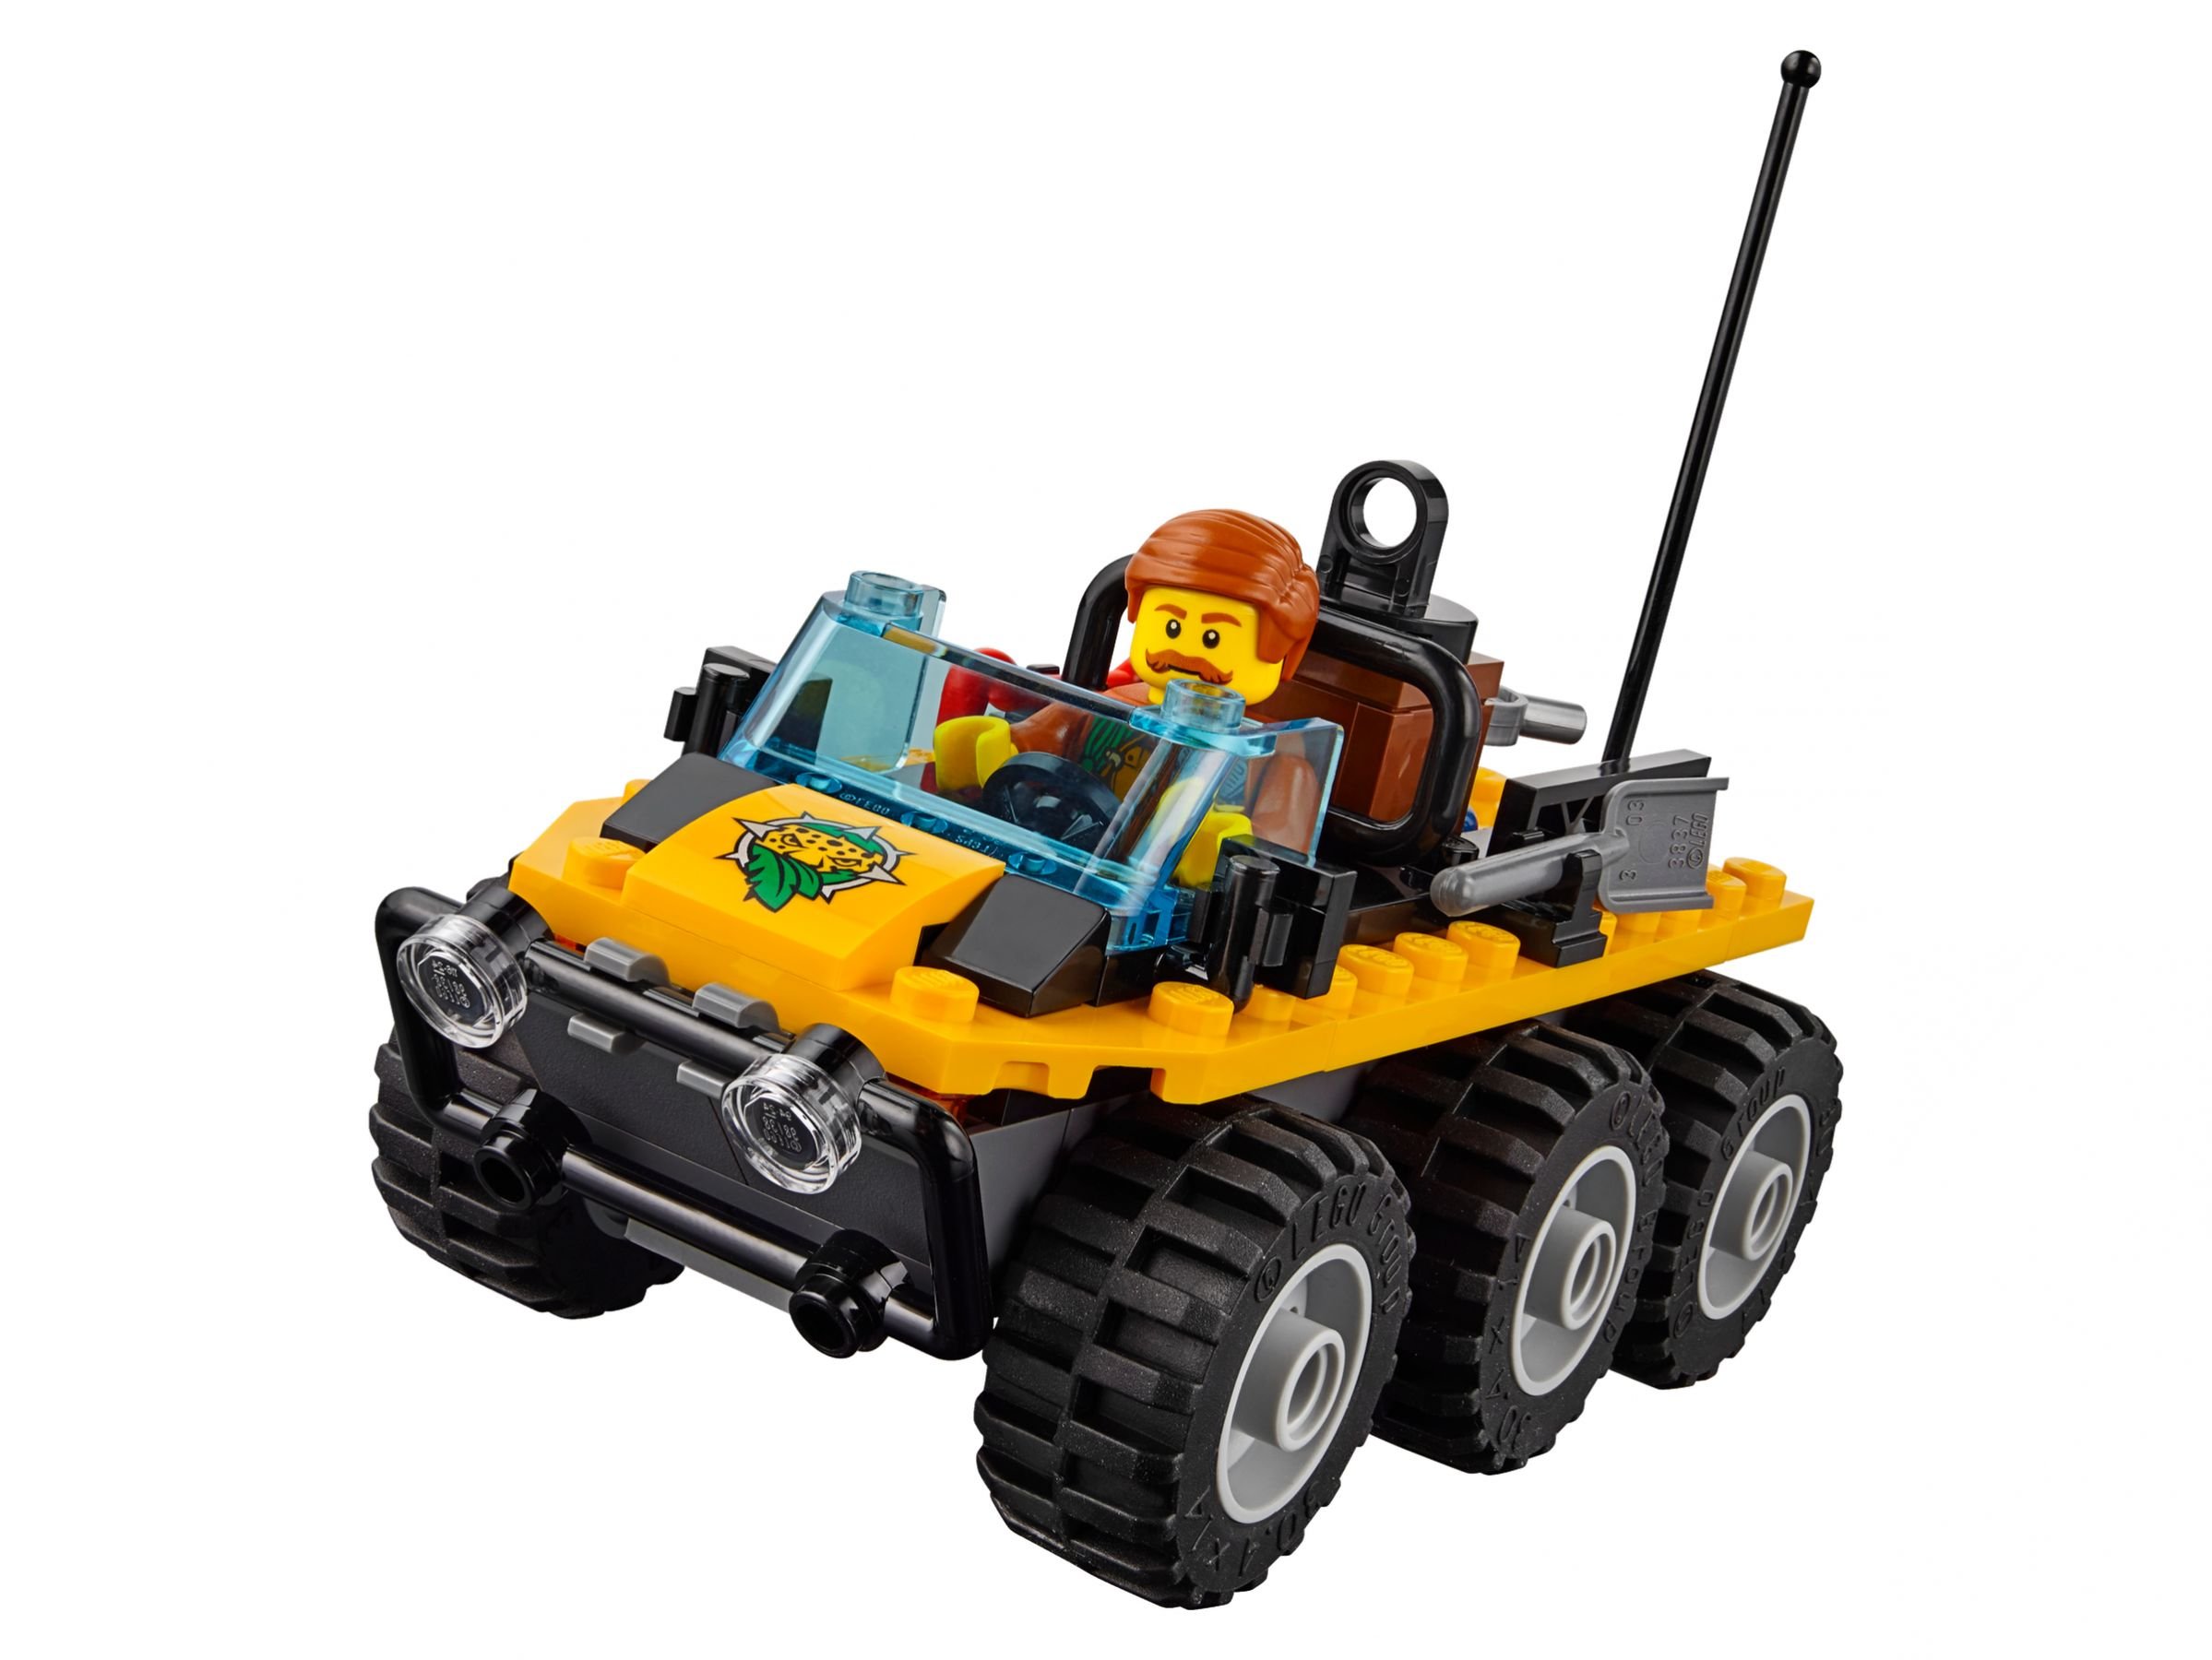 LEGO City 60161 Dschungel-Forschungsstation LEGO_60161_alt4.jpg